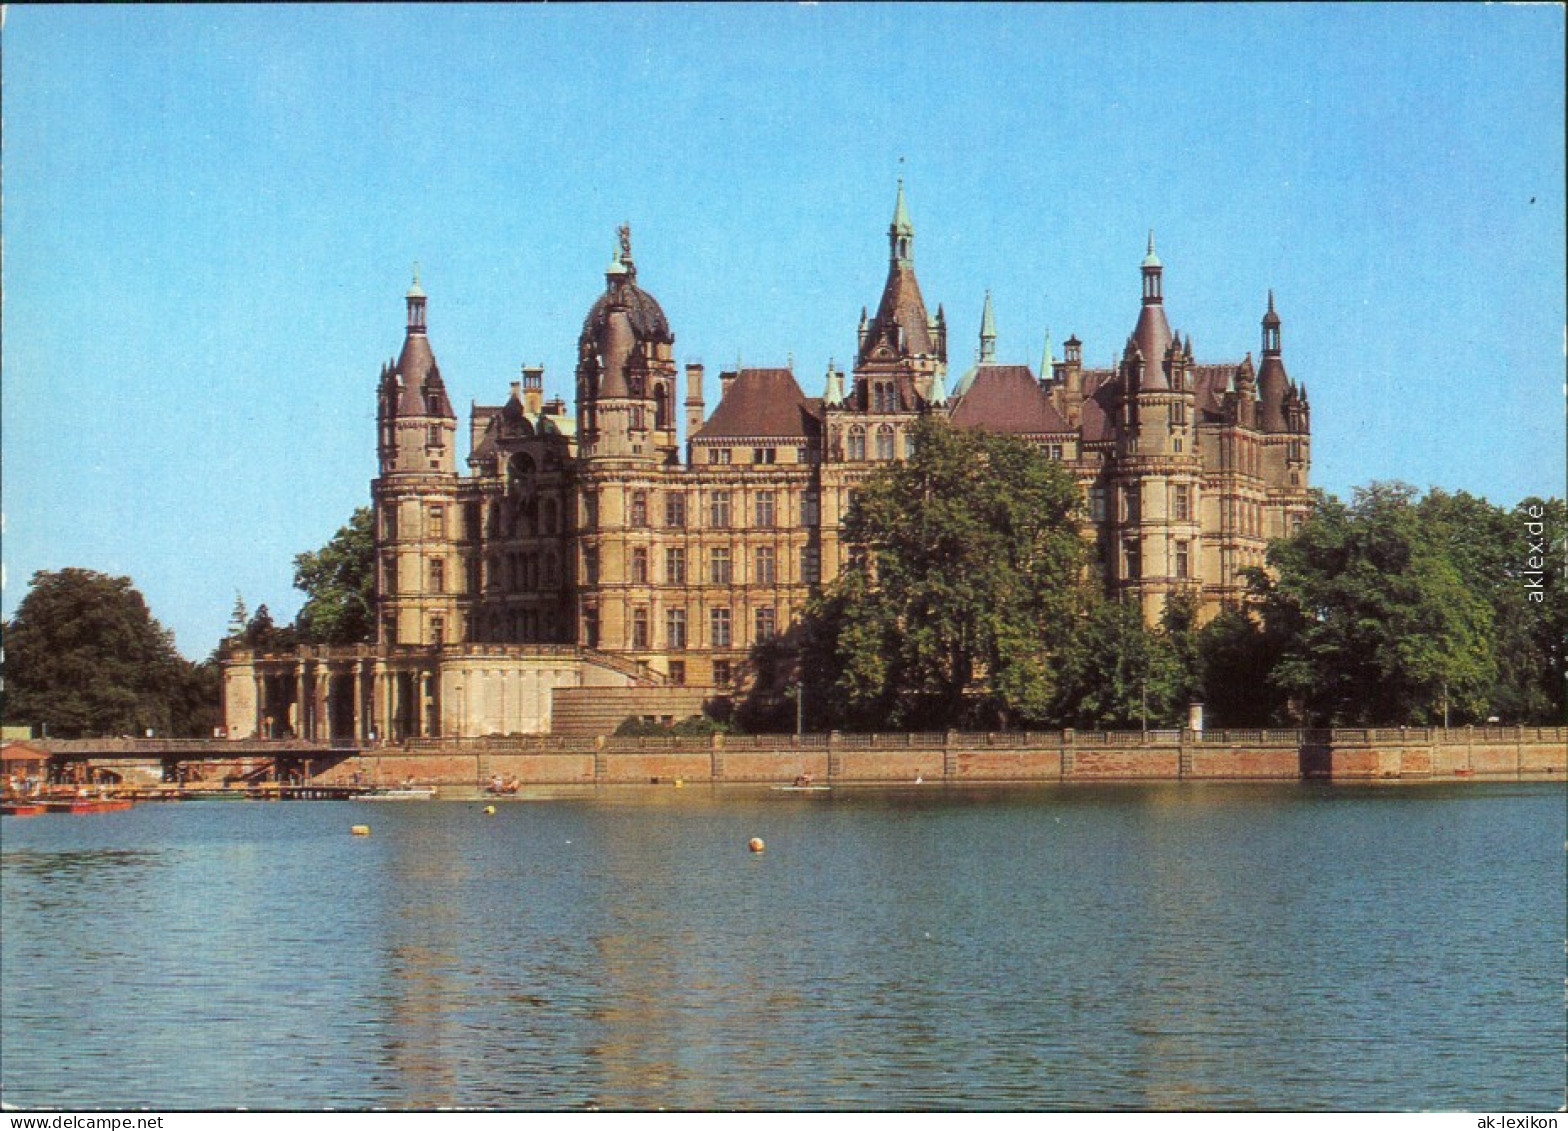 Ansichtskarte Schwerin Schweriner Schloss 1985 - Schwerin